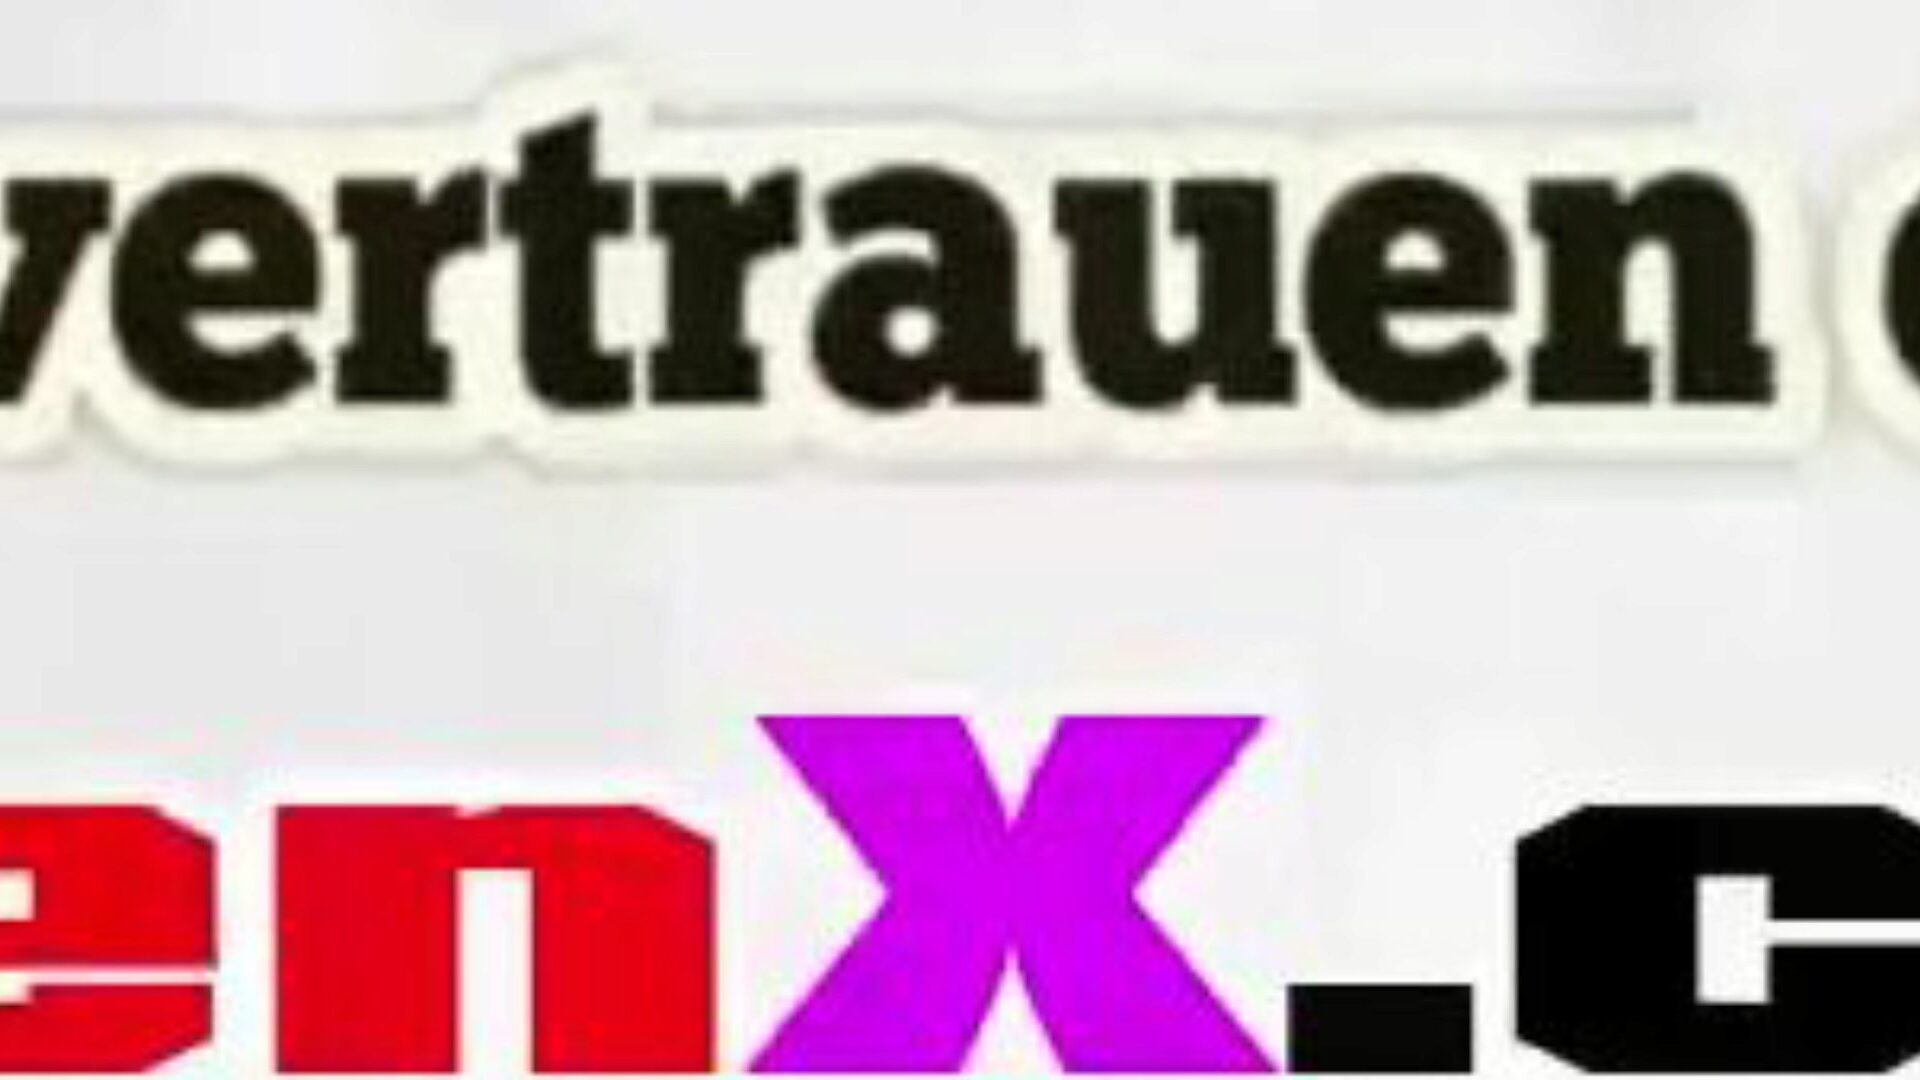 stiefmutter gefickt：無料のmutterドイツ語hdポルノビデオf5時計stiefmutter geficktチューブfuckfestビデオをxhamsterで無料で、ドイツ語のつぶやきドイツ語とつぶやきtochterhdポルノ映画シーンエピソードの驚くべきコレクション